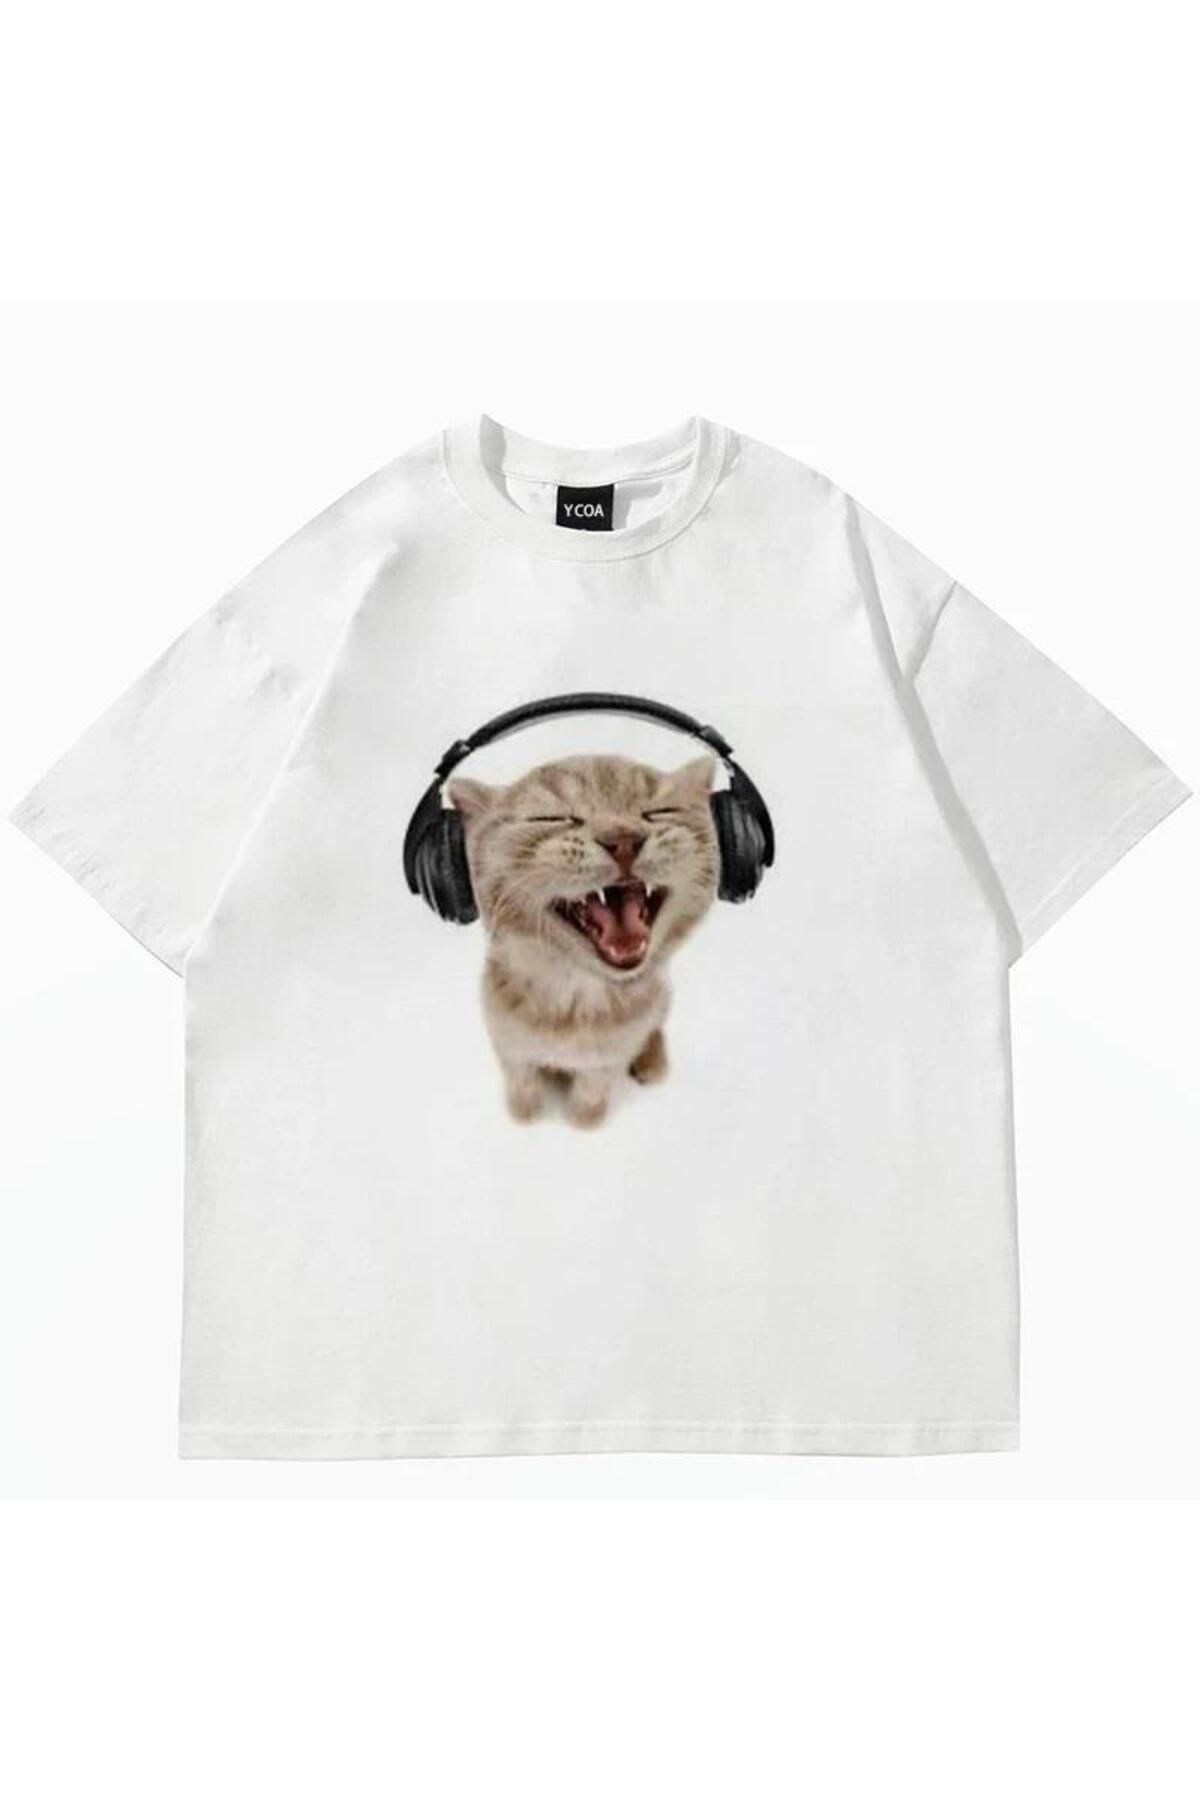 Gofeel Day Light Y2k Kulaklıkla Müzik Dinleyen Kedi Baskılı Beyaz Unisex Oversize T-shirt